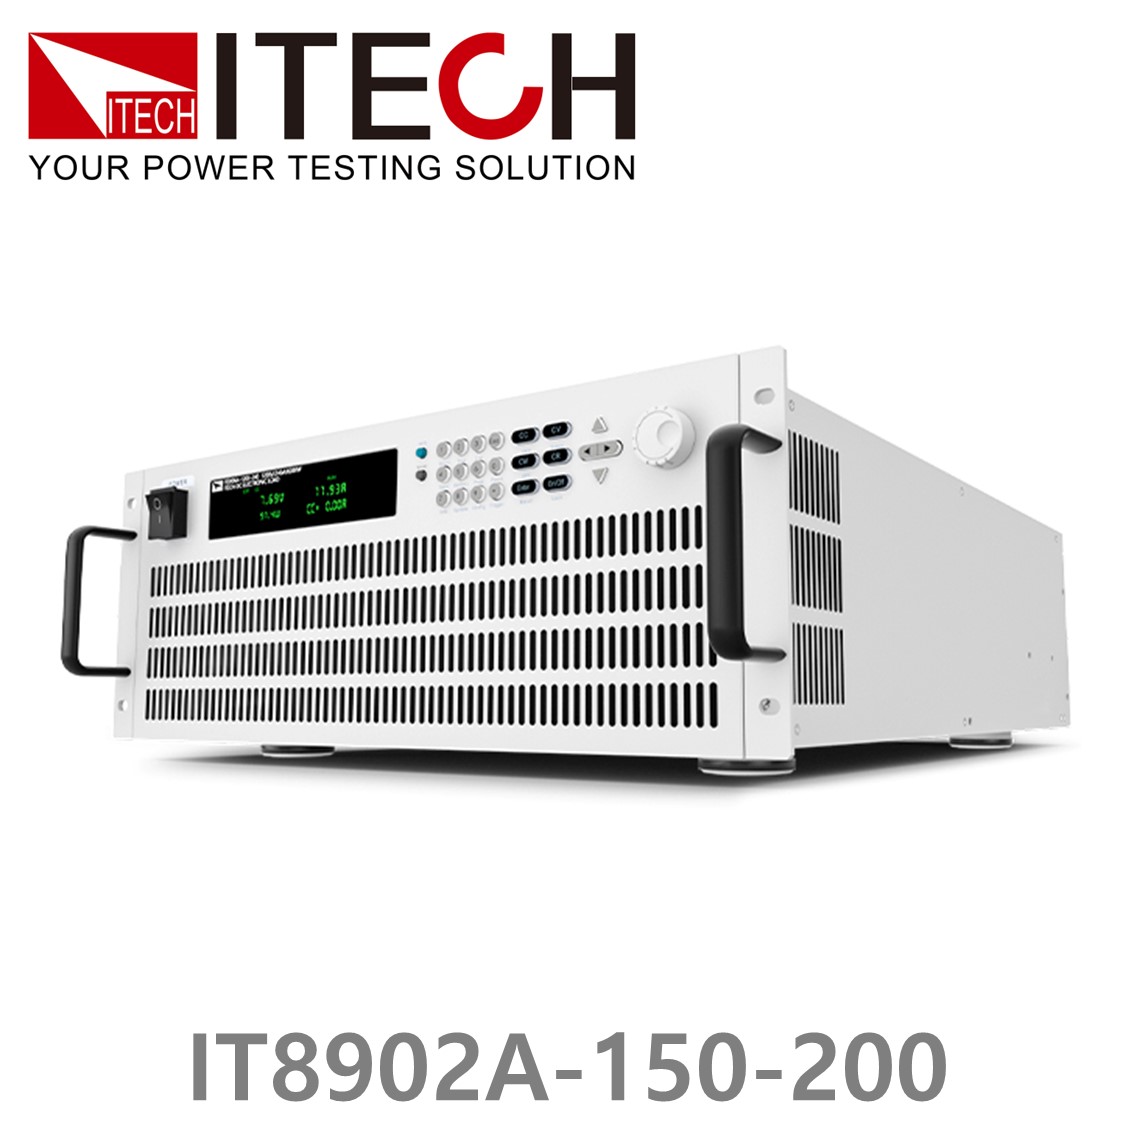 [ ITECH ] IT8902A-150-200  고성능 고전력 DC 전자로드 150V/200A/2kW (4U)